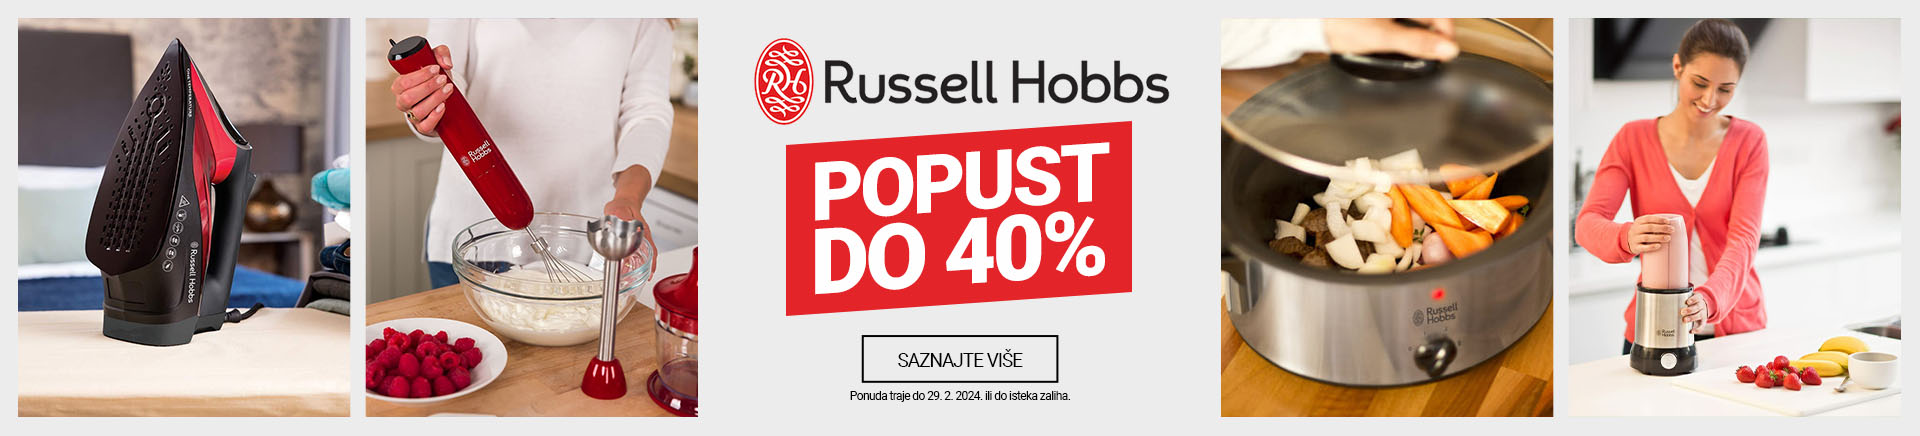 HR~Russel hobbs top popust 40 posto MOBILE 380 X 436.jpg